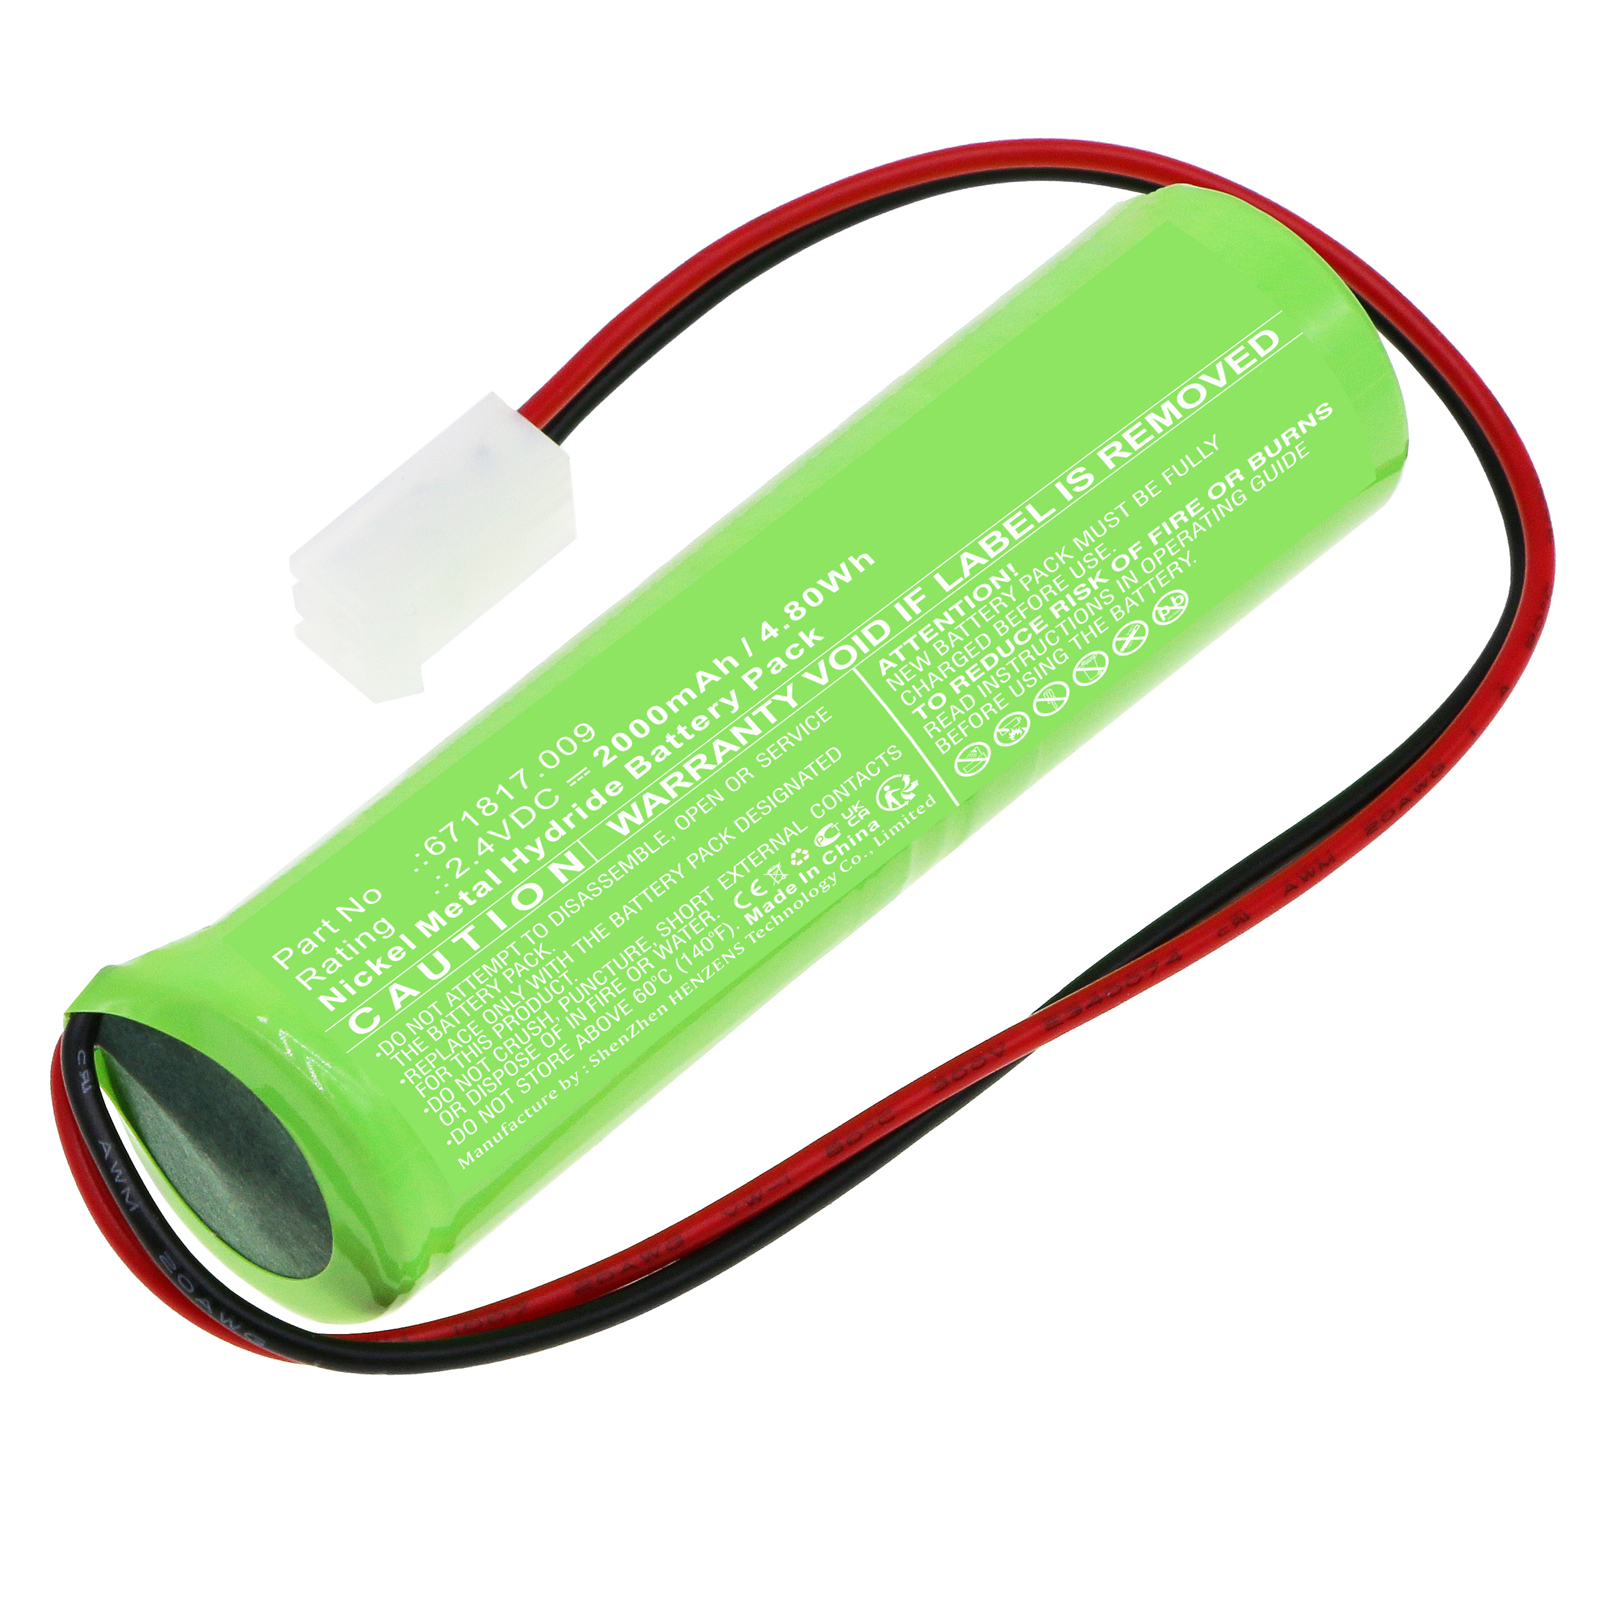 Batteries for ELUBATEmergency Lighting